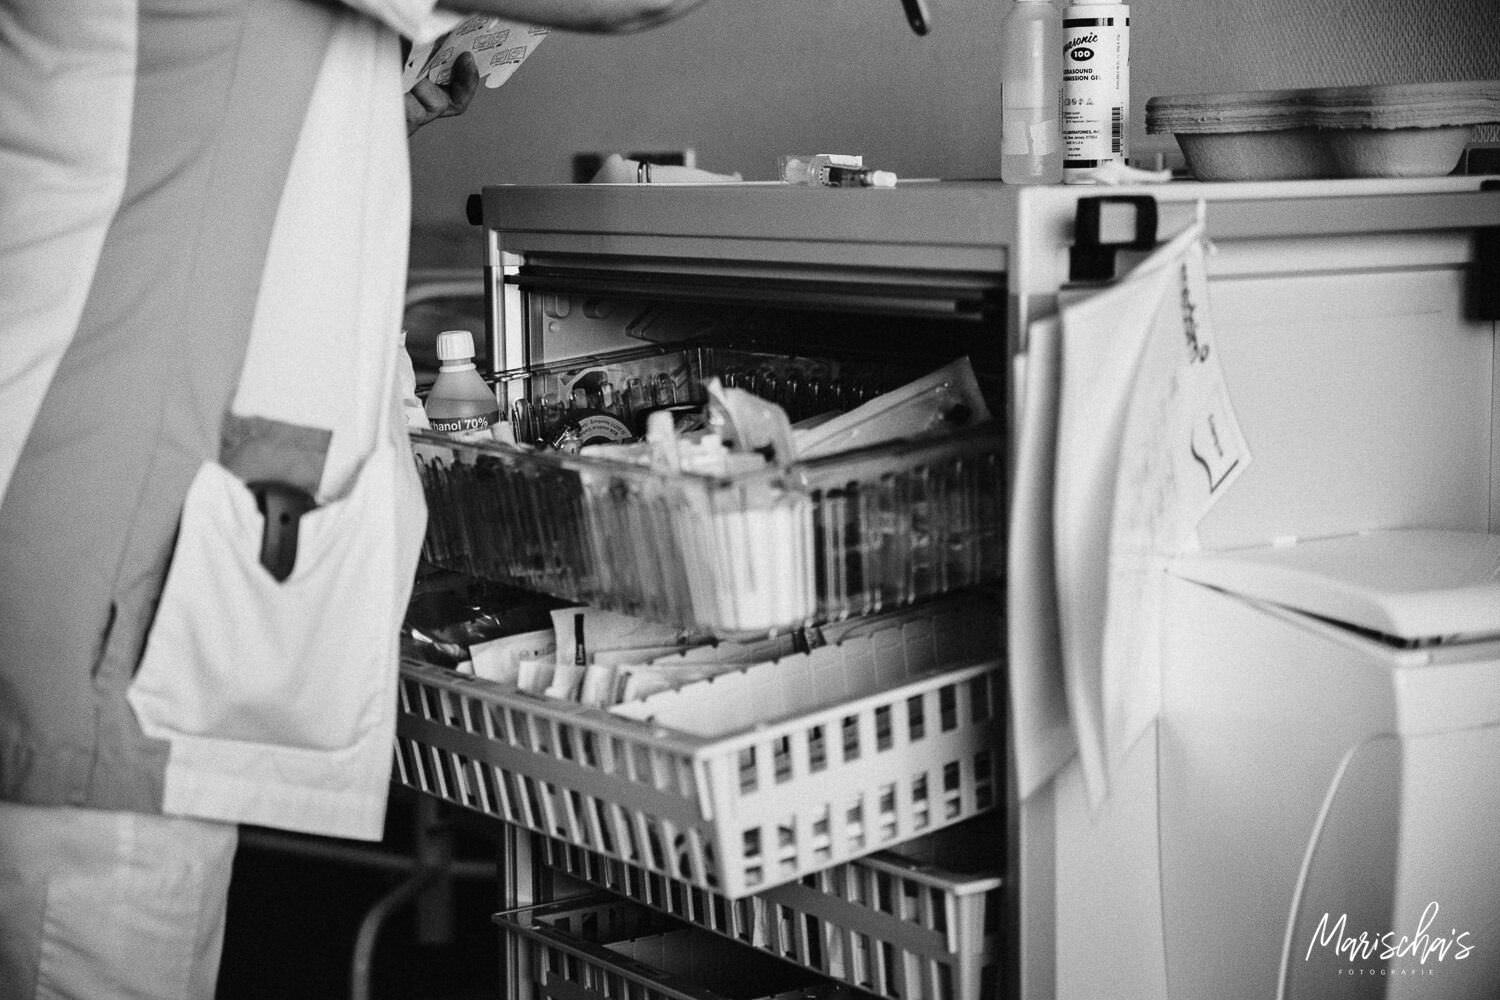 Geboortefotograaf voor een bevalling in het ziekenhuis Zuyderland in Heerlen